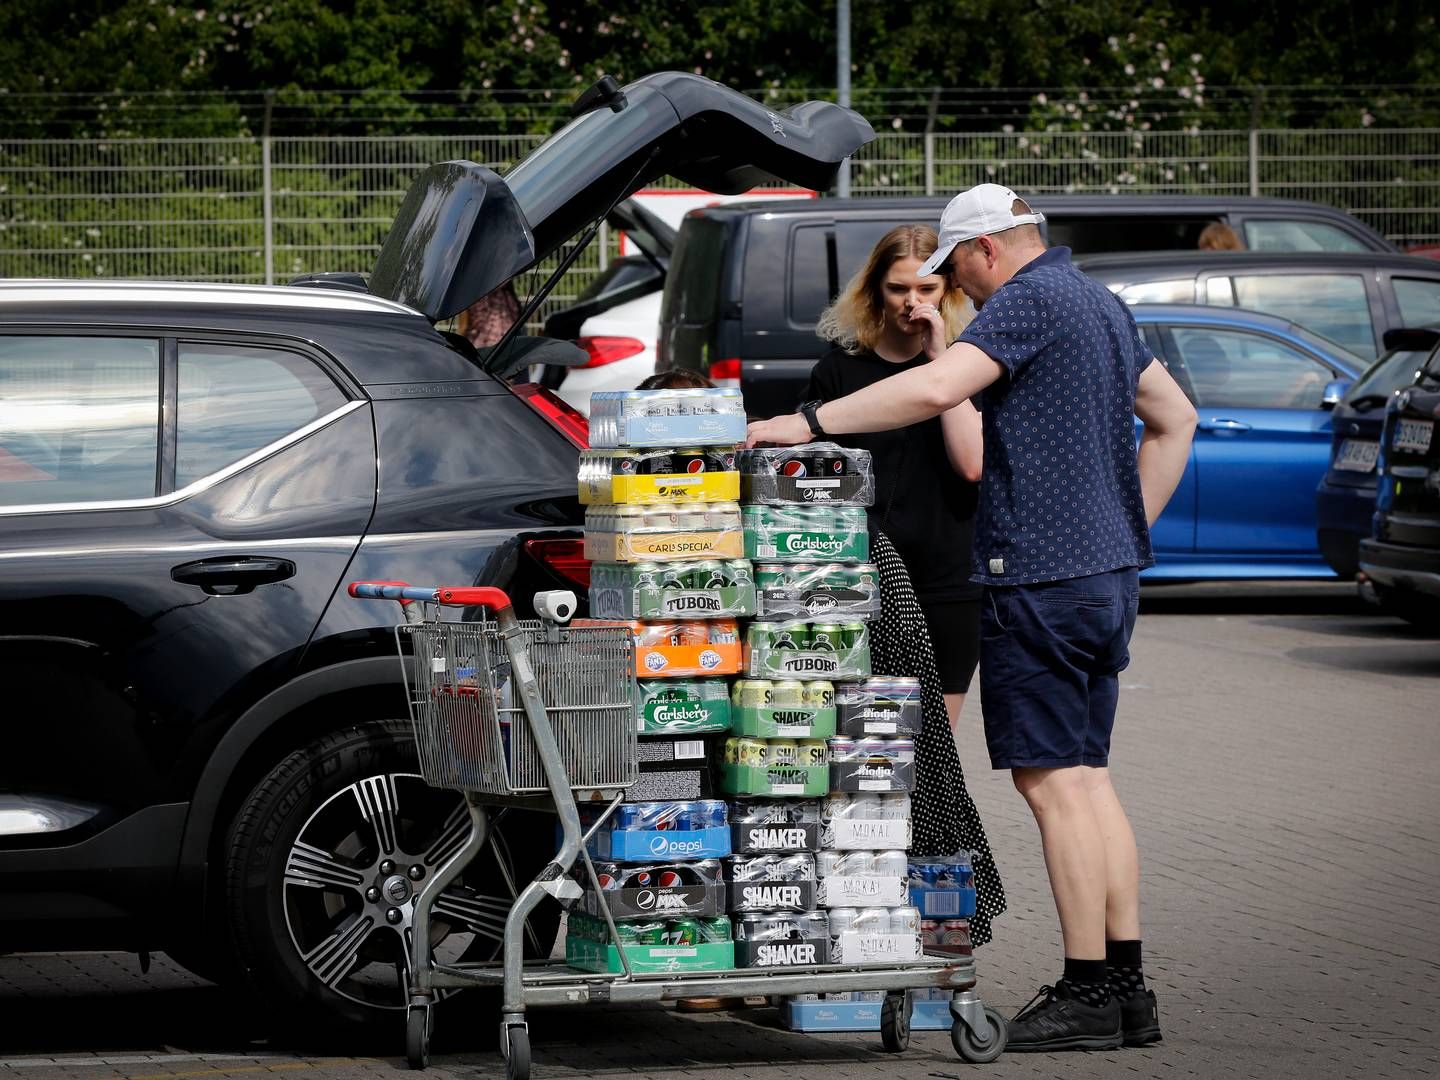 Man vil fortsat kunne købe tyske dåser uden pant i grænsebutikkerne. Det fastslår EU-domstolen med torsdagens afgørelse. (Arkivfoto.) | Photo: Anders Brohus